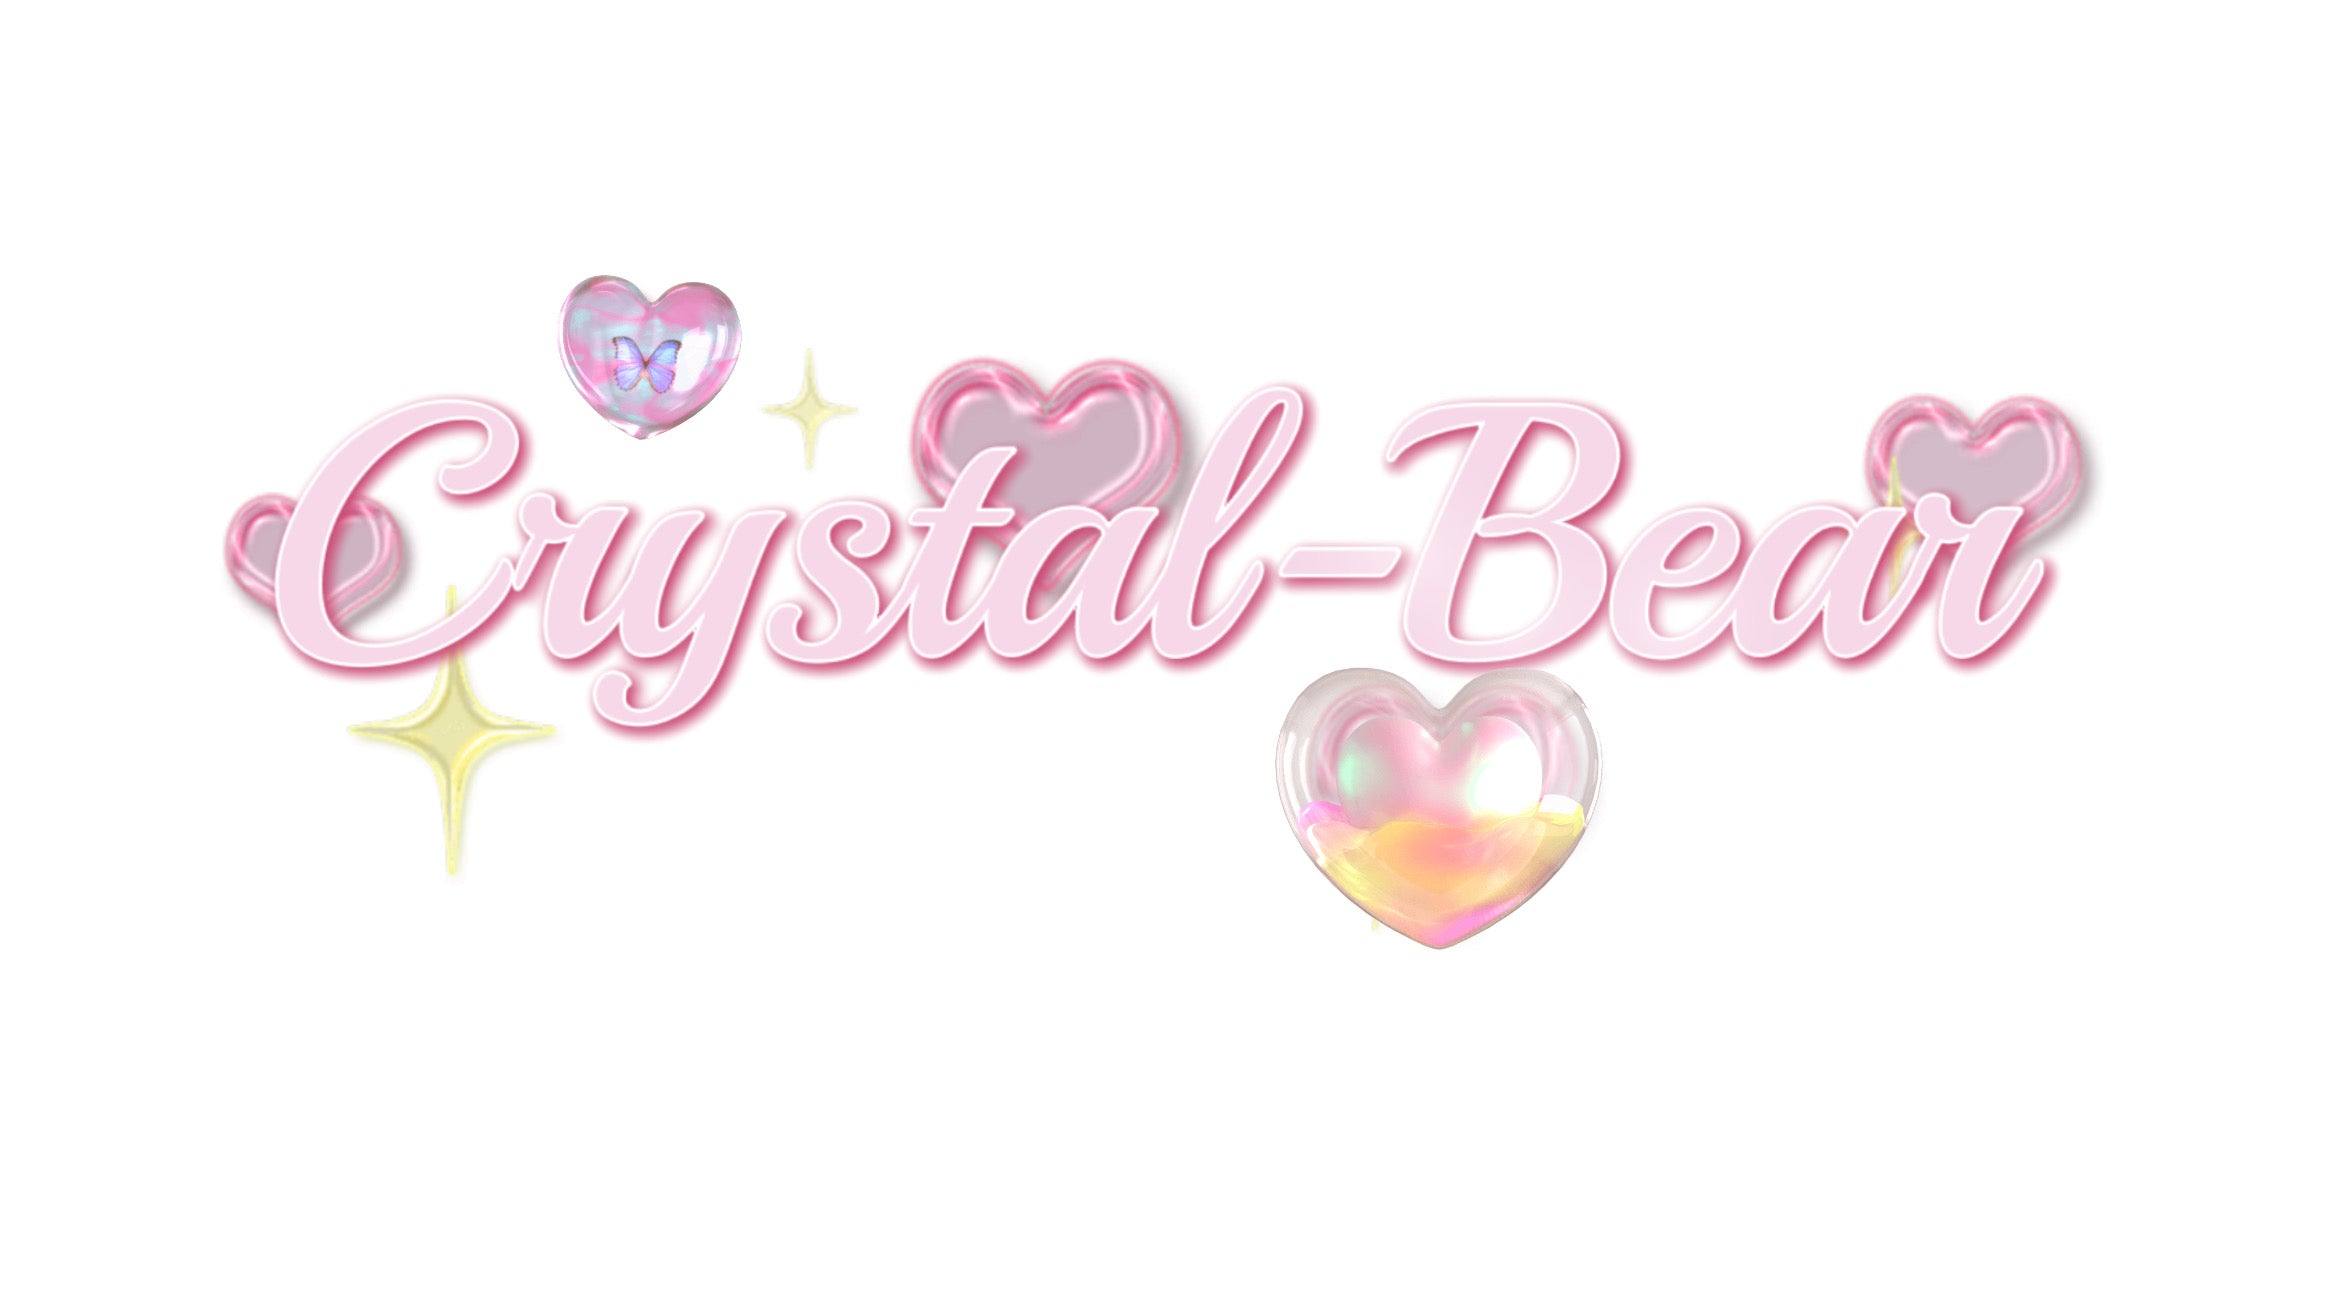 Crystal-Bear